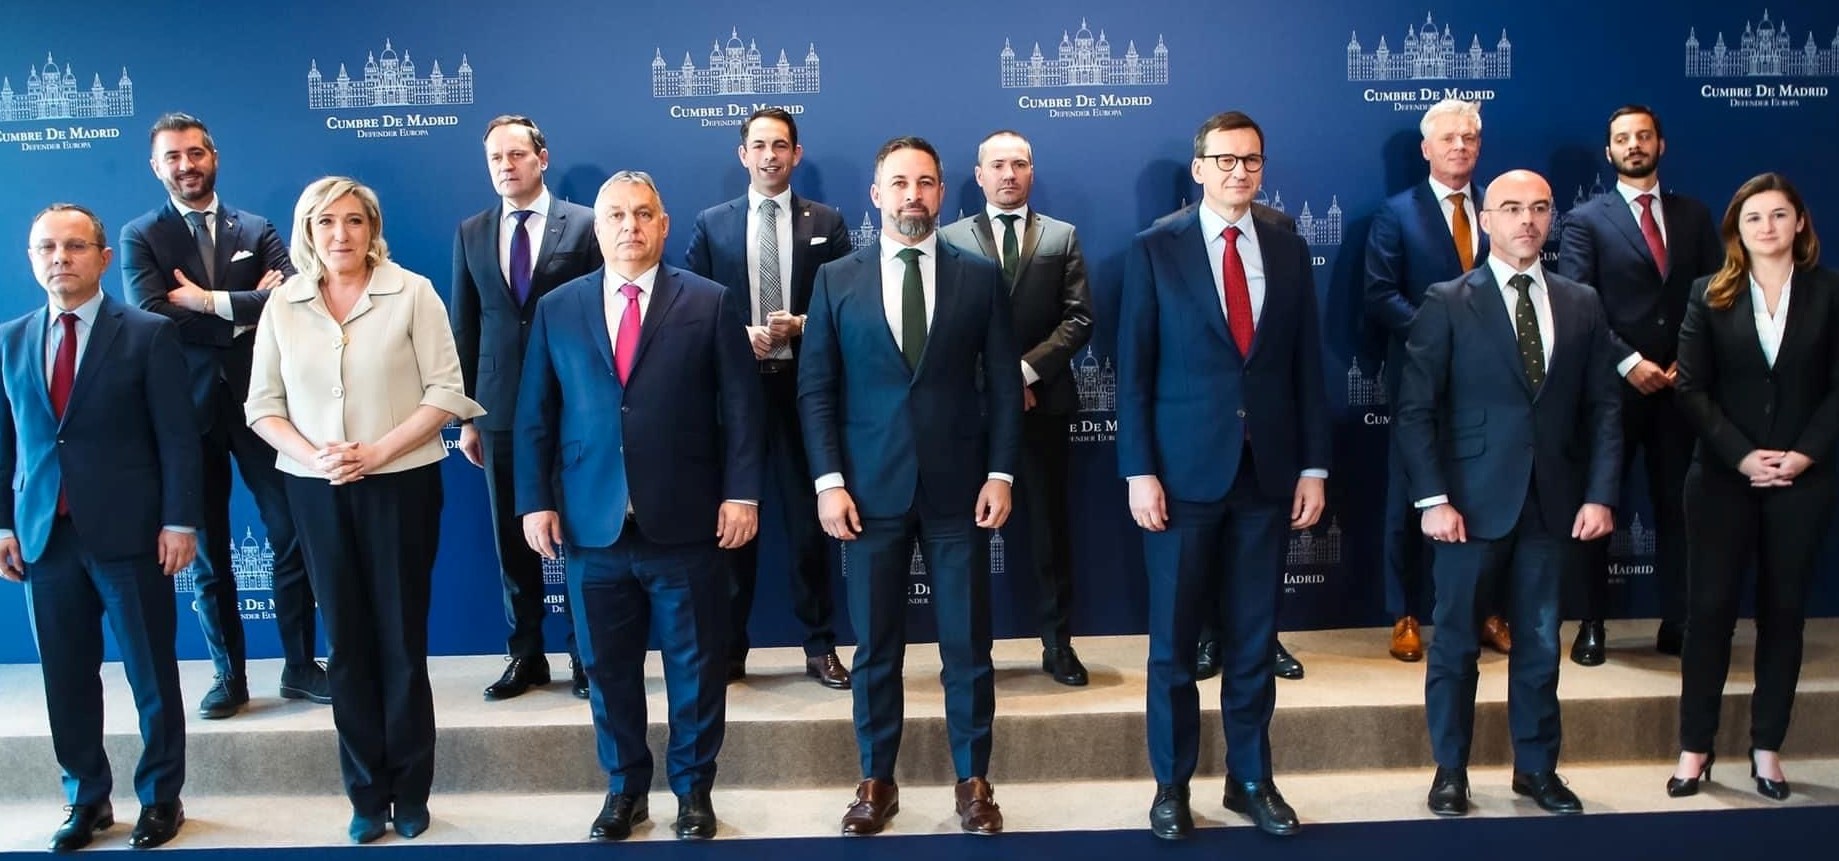 Paolo Borchia con Orban, Le Pen e Morawiecki: alla “cumbre de Madrid” la Lega per un centrodestra unito in Europa